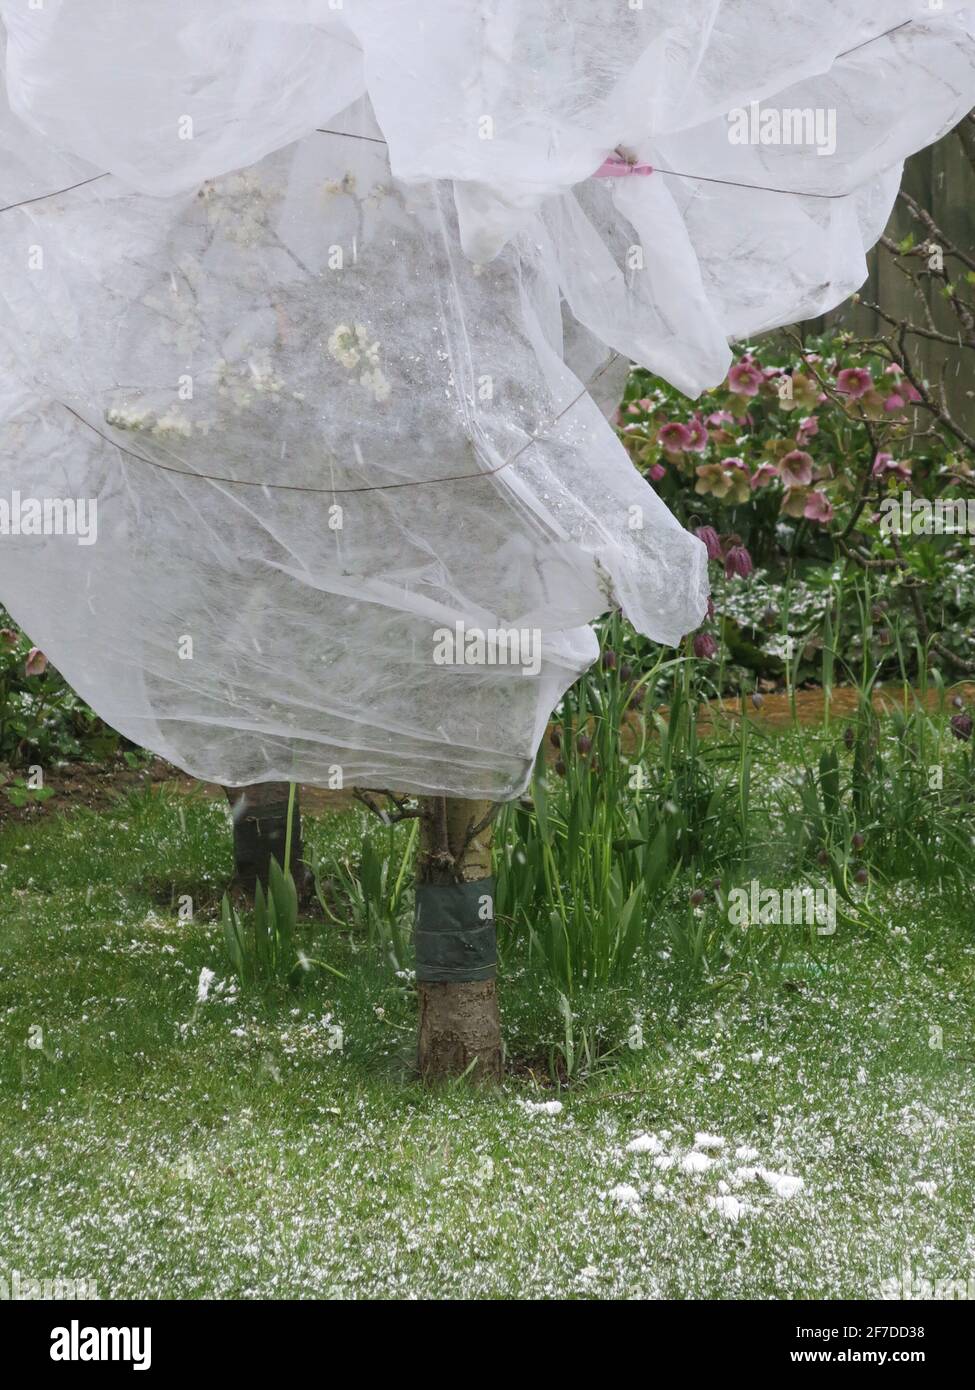 April 2021: Obstbäume werden in einem englischen Garten in Gartenvlies eingewickelt, um die Blüte in einem plötzlichen Kälteeinbruch zu schützen. Stockfoto